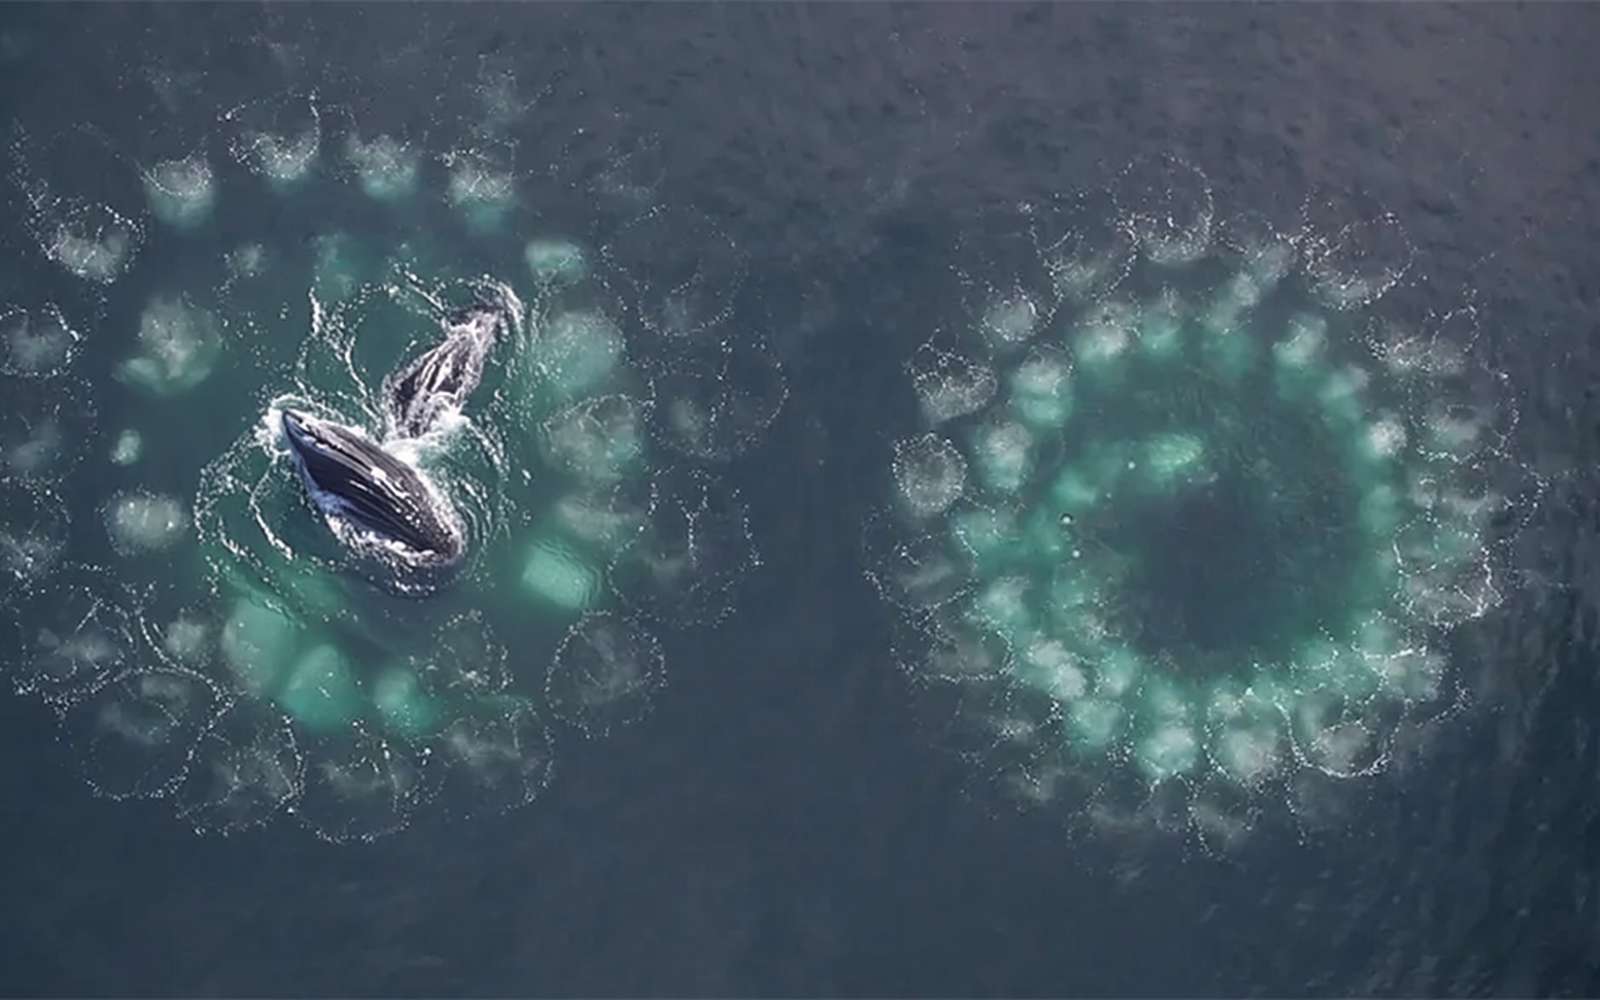 Cette baleine chasse les poissons avec des filets... de bulles !